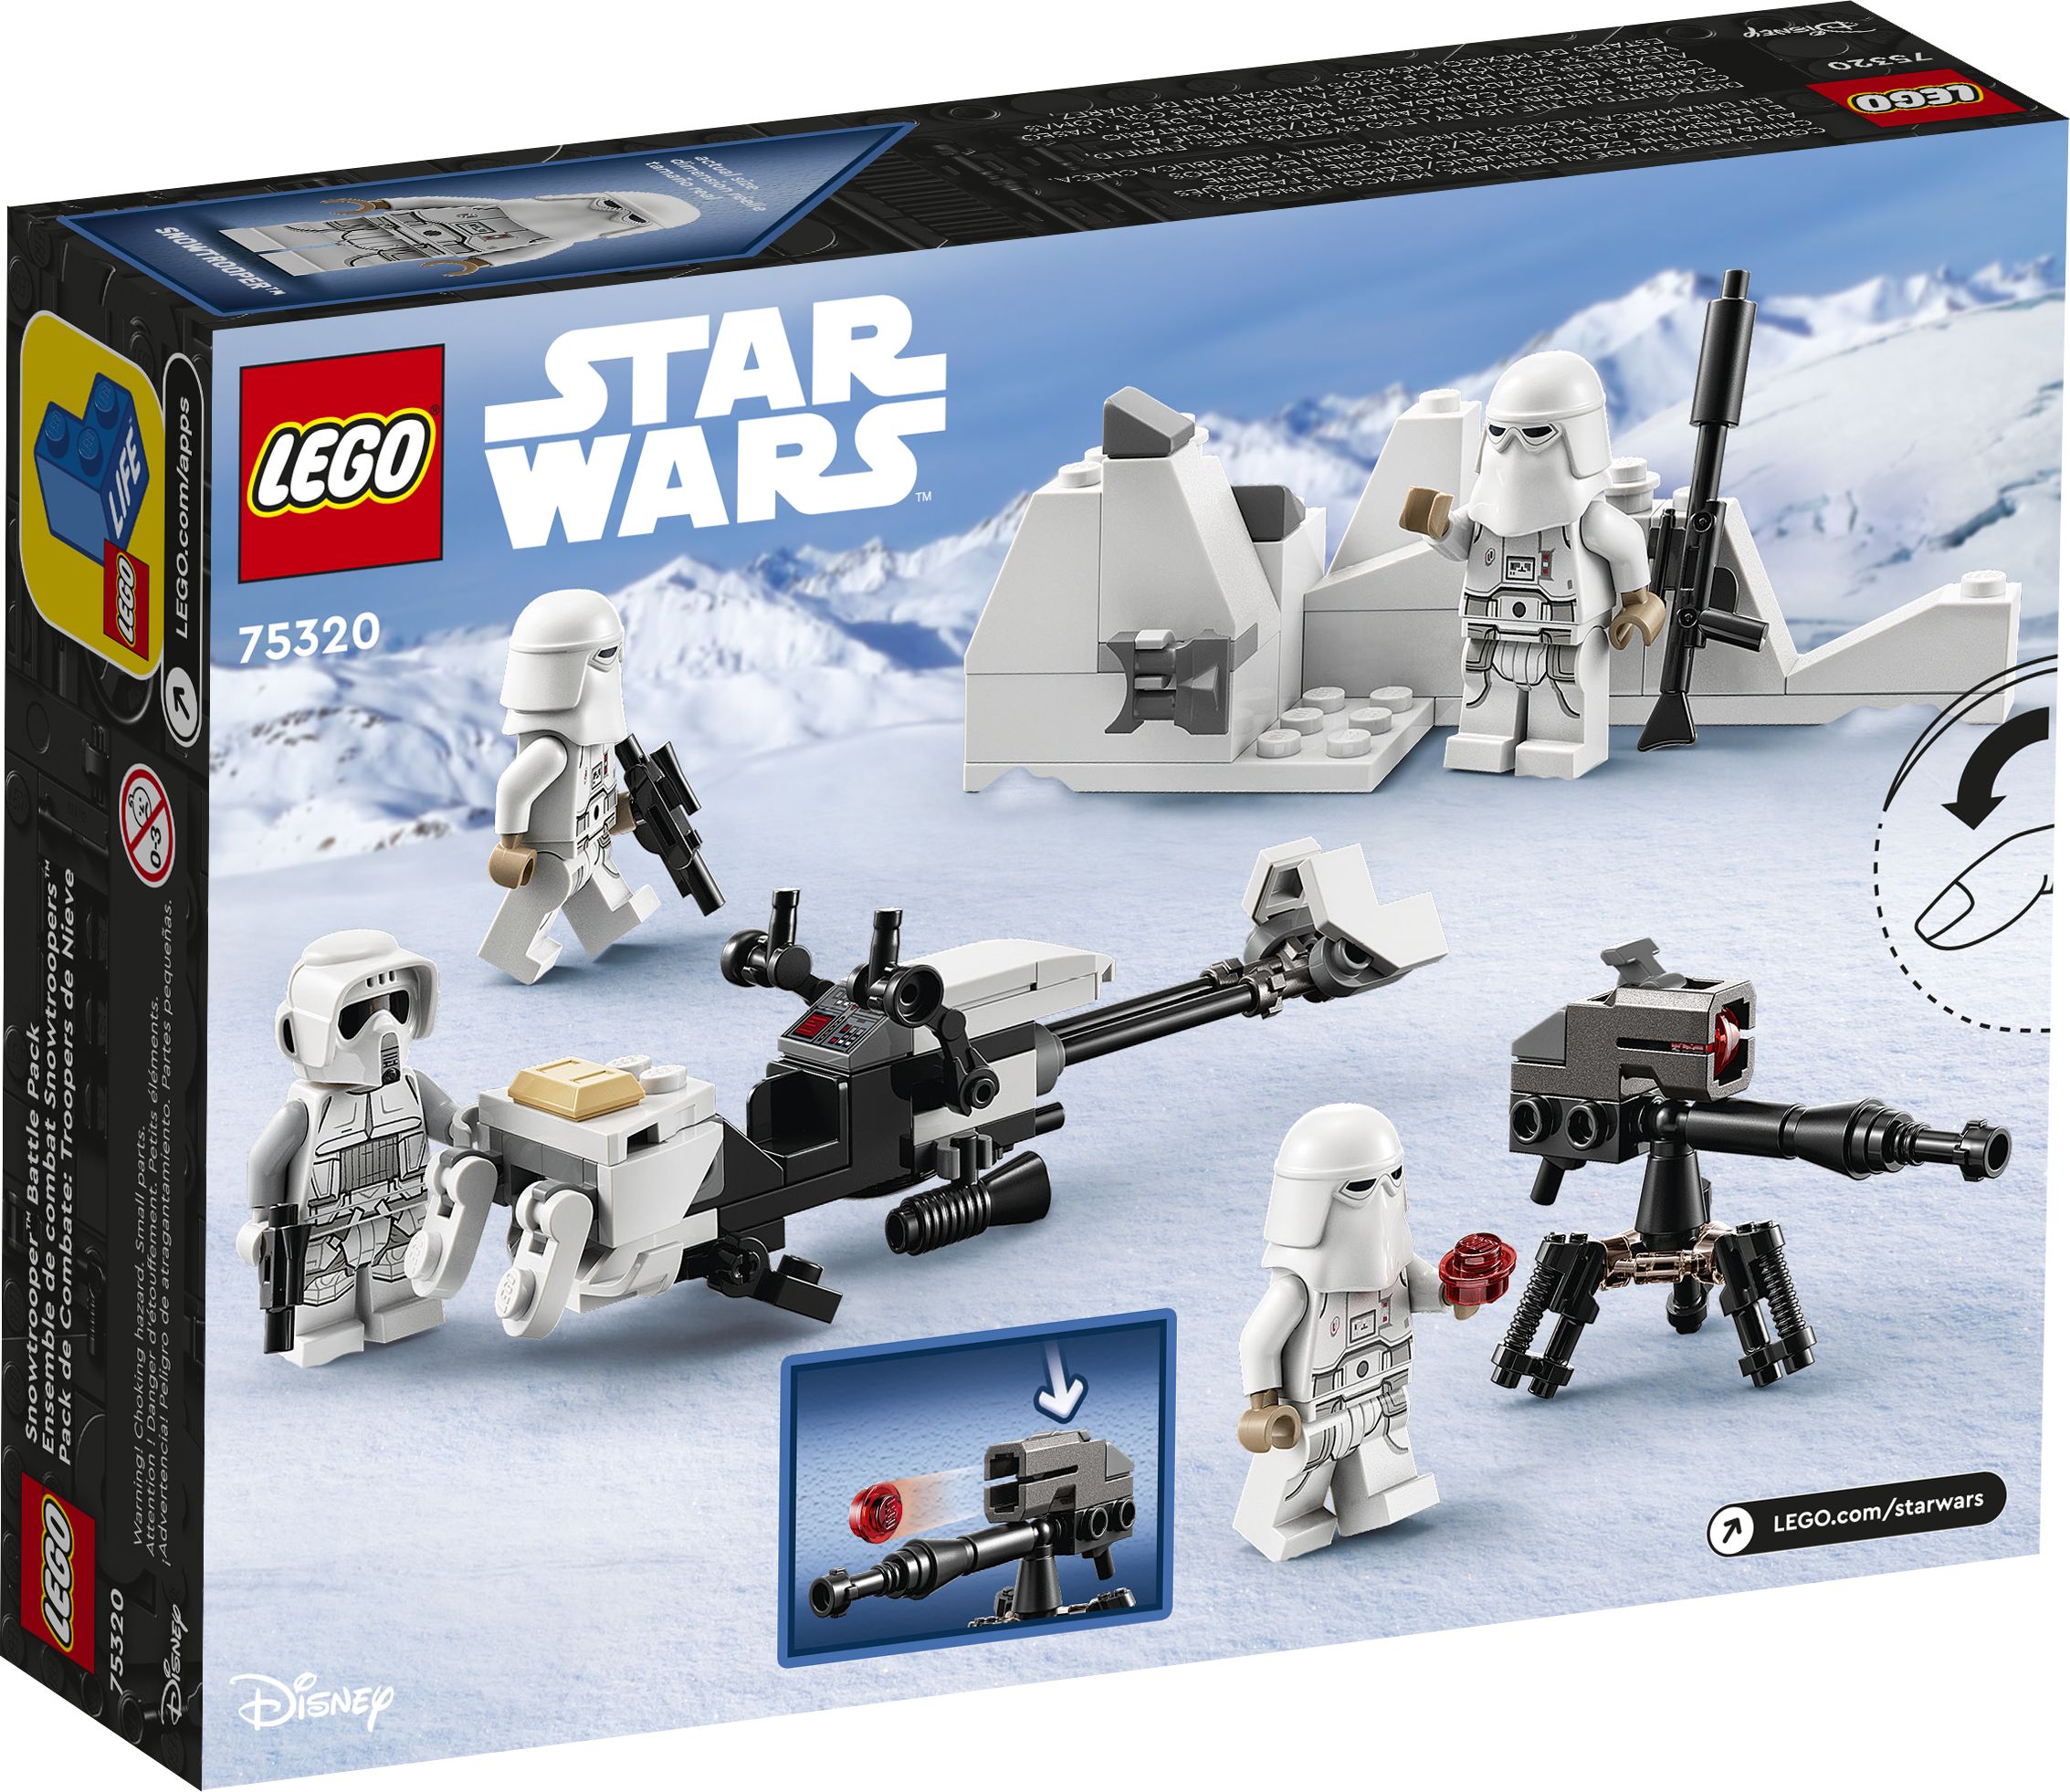 LEGO Star Wars 75320 Snowtrooper™ Battle Pack LEGO_75320_Box5_v39.jpg